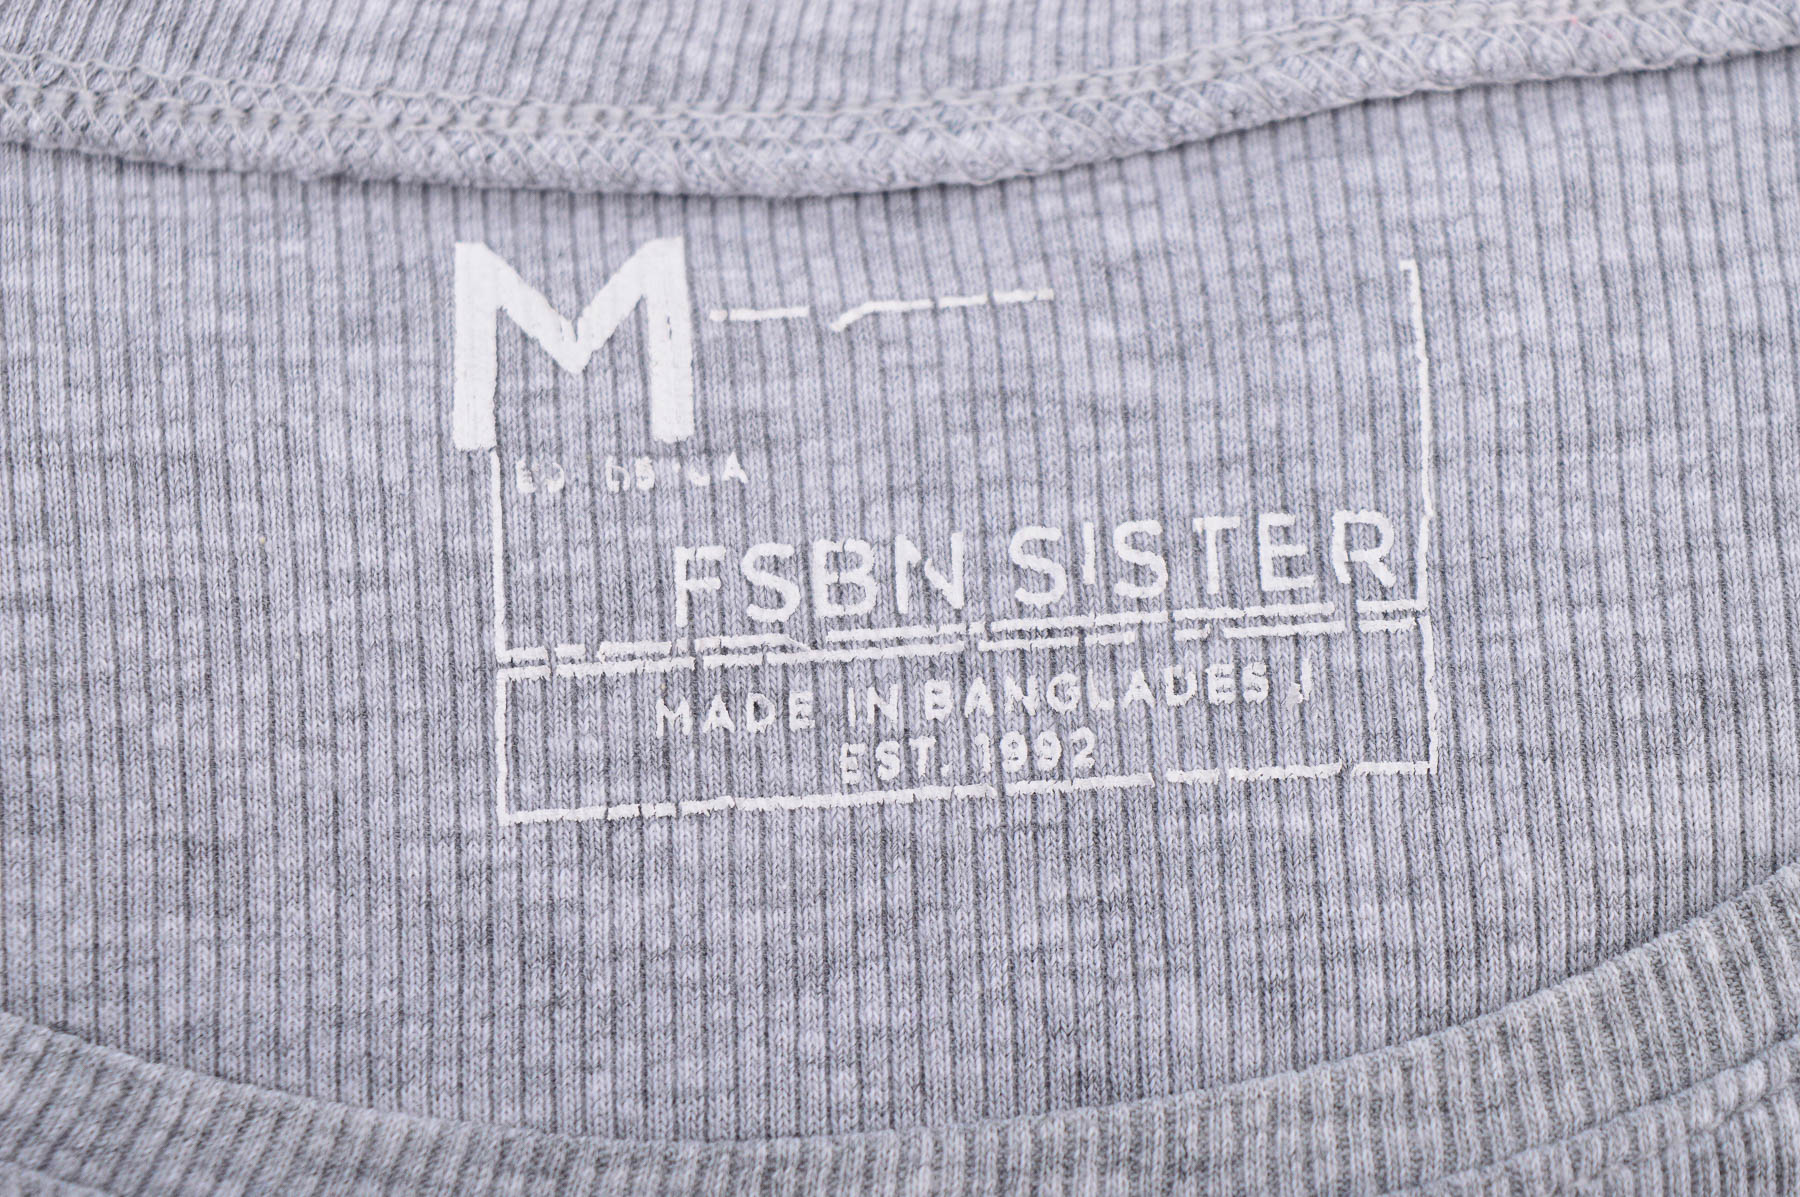 Дамска тениска - FSBN SISTER - 2